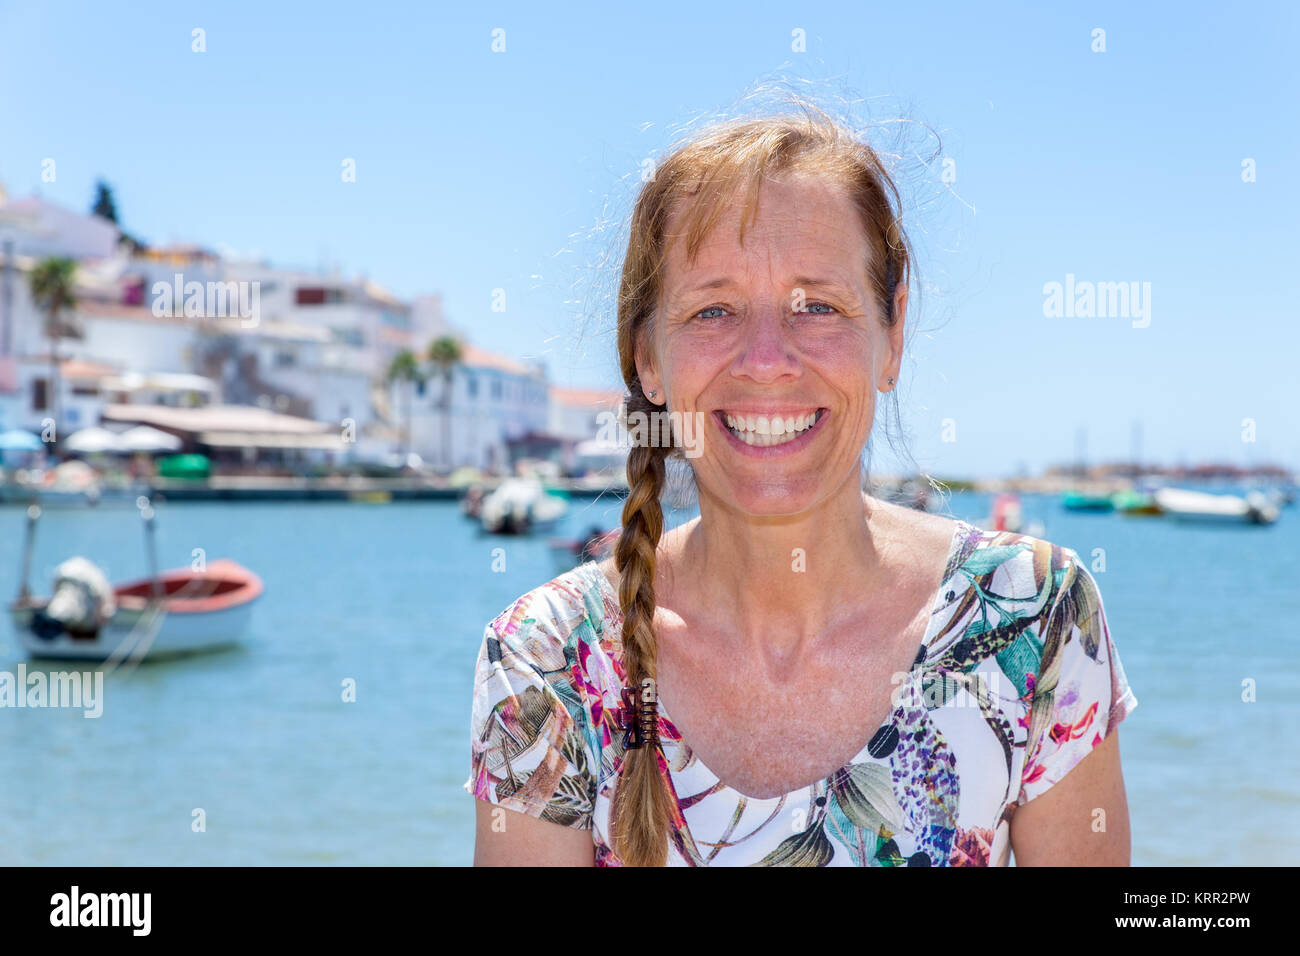 En tant que femme dans le port touristique de Portugal Banque D'Images